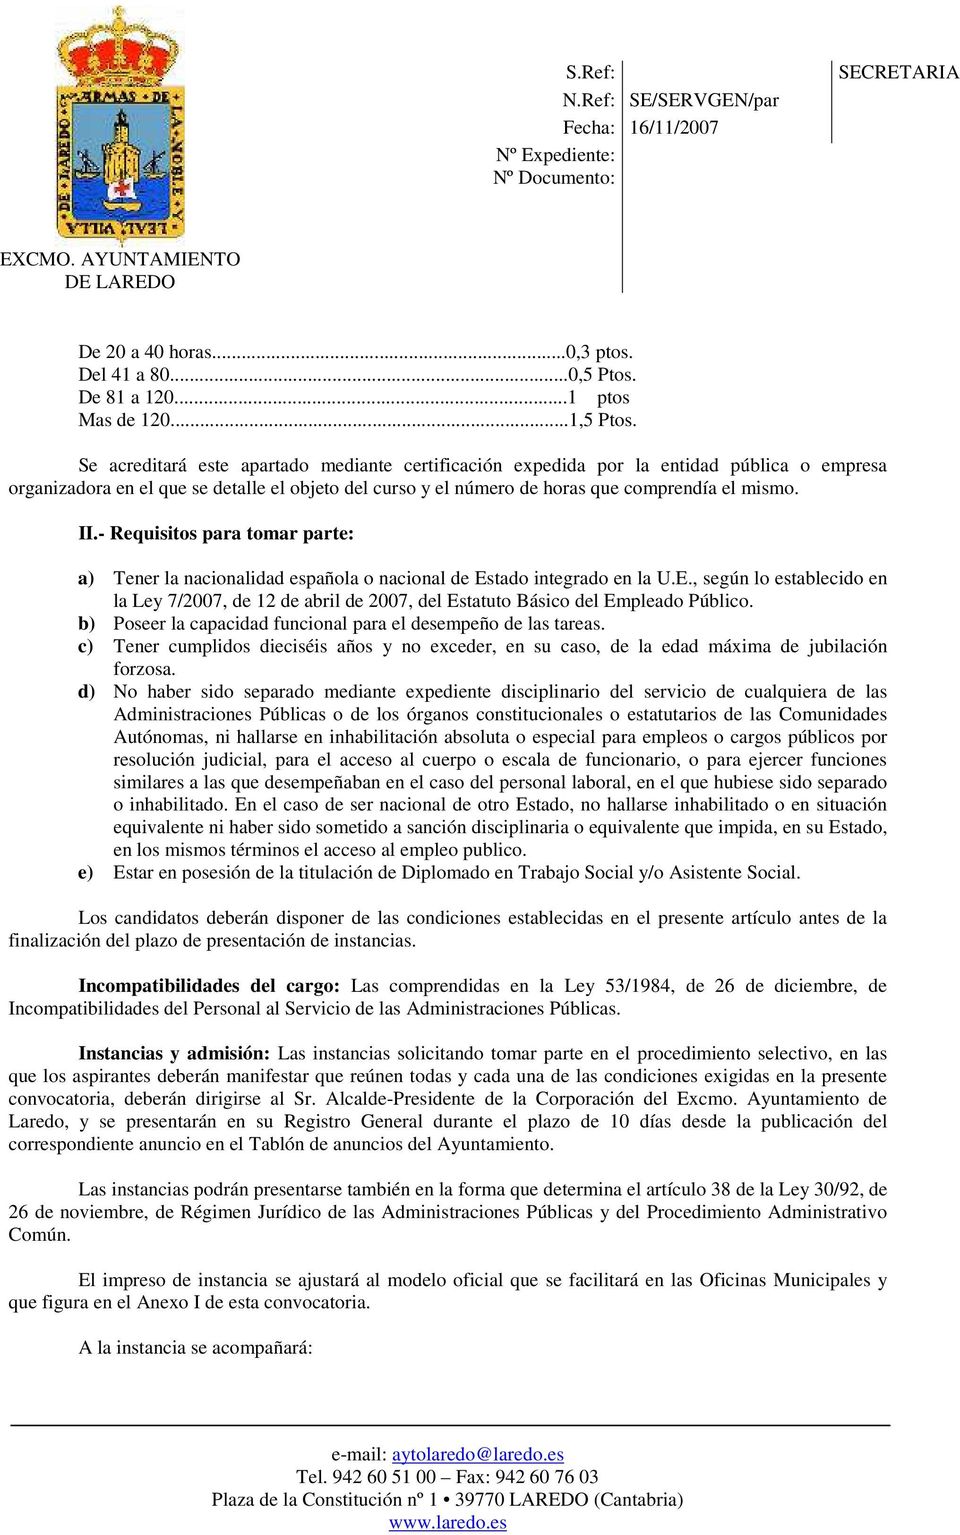 - Requisitos para tomar parte: a) Tener la nacionalidad española o nacional de Estado integrado en la U.E., según lo establecido en la Ley 7/2007, de 12 de abril de 2007, del Estatuto Básico del Empleado Público.